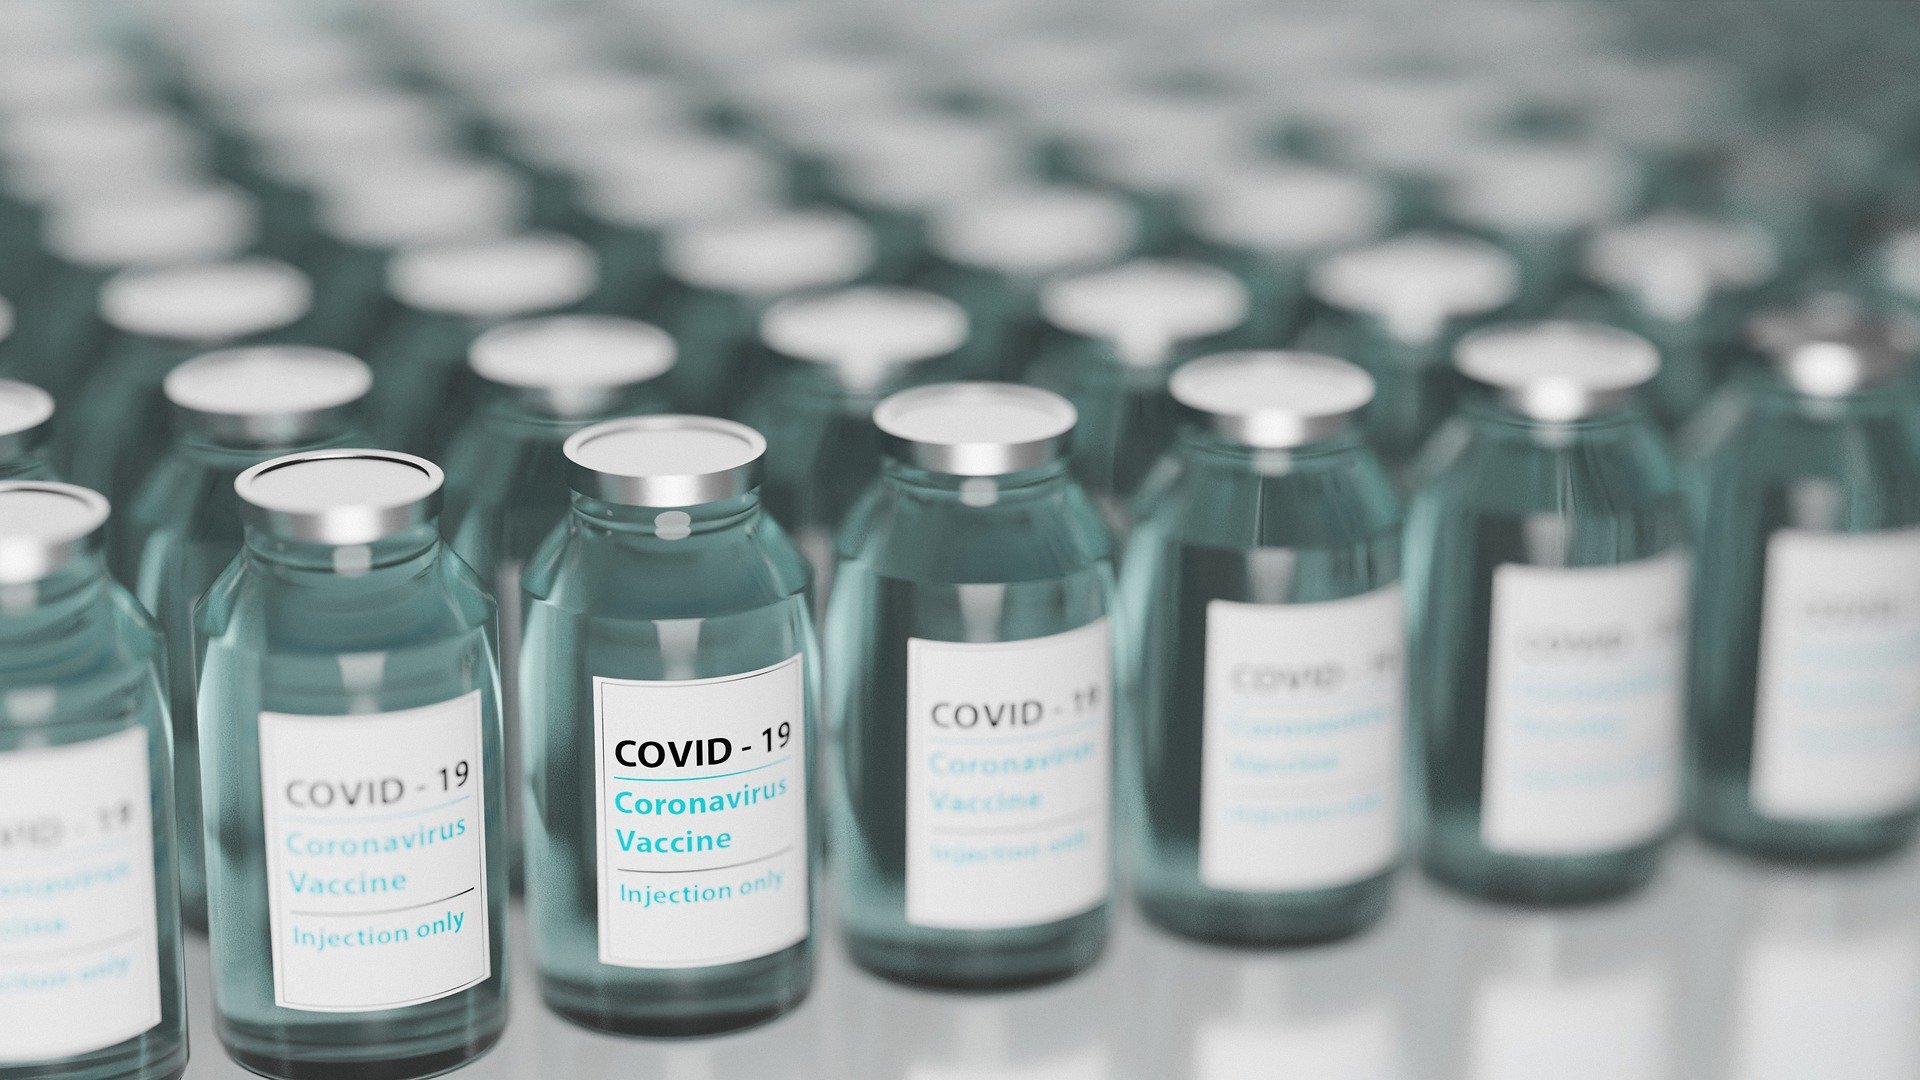 Rows of COVID-19 vaccine vials